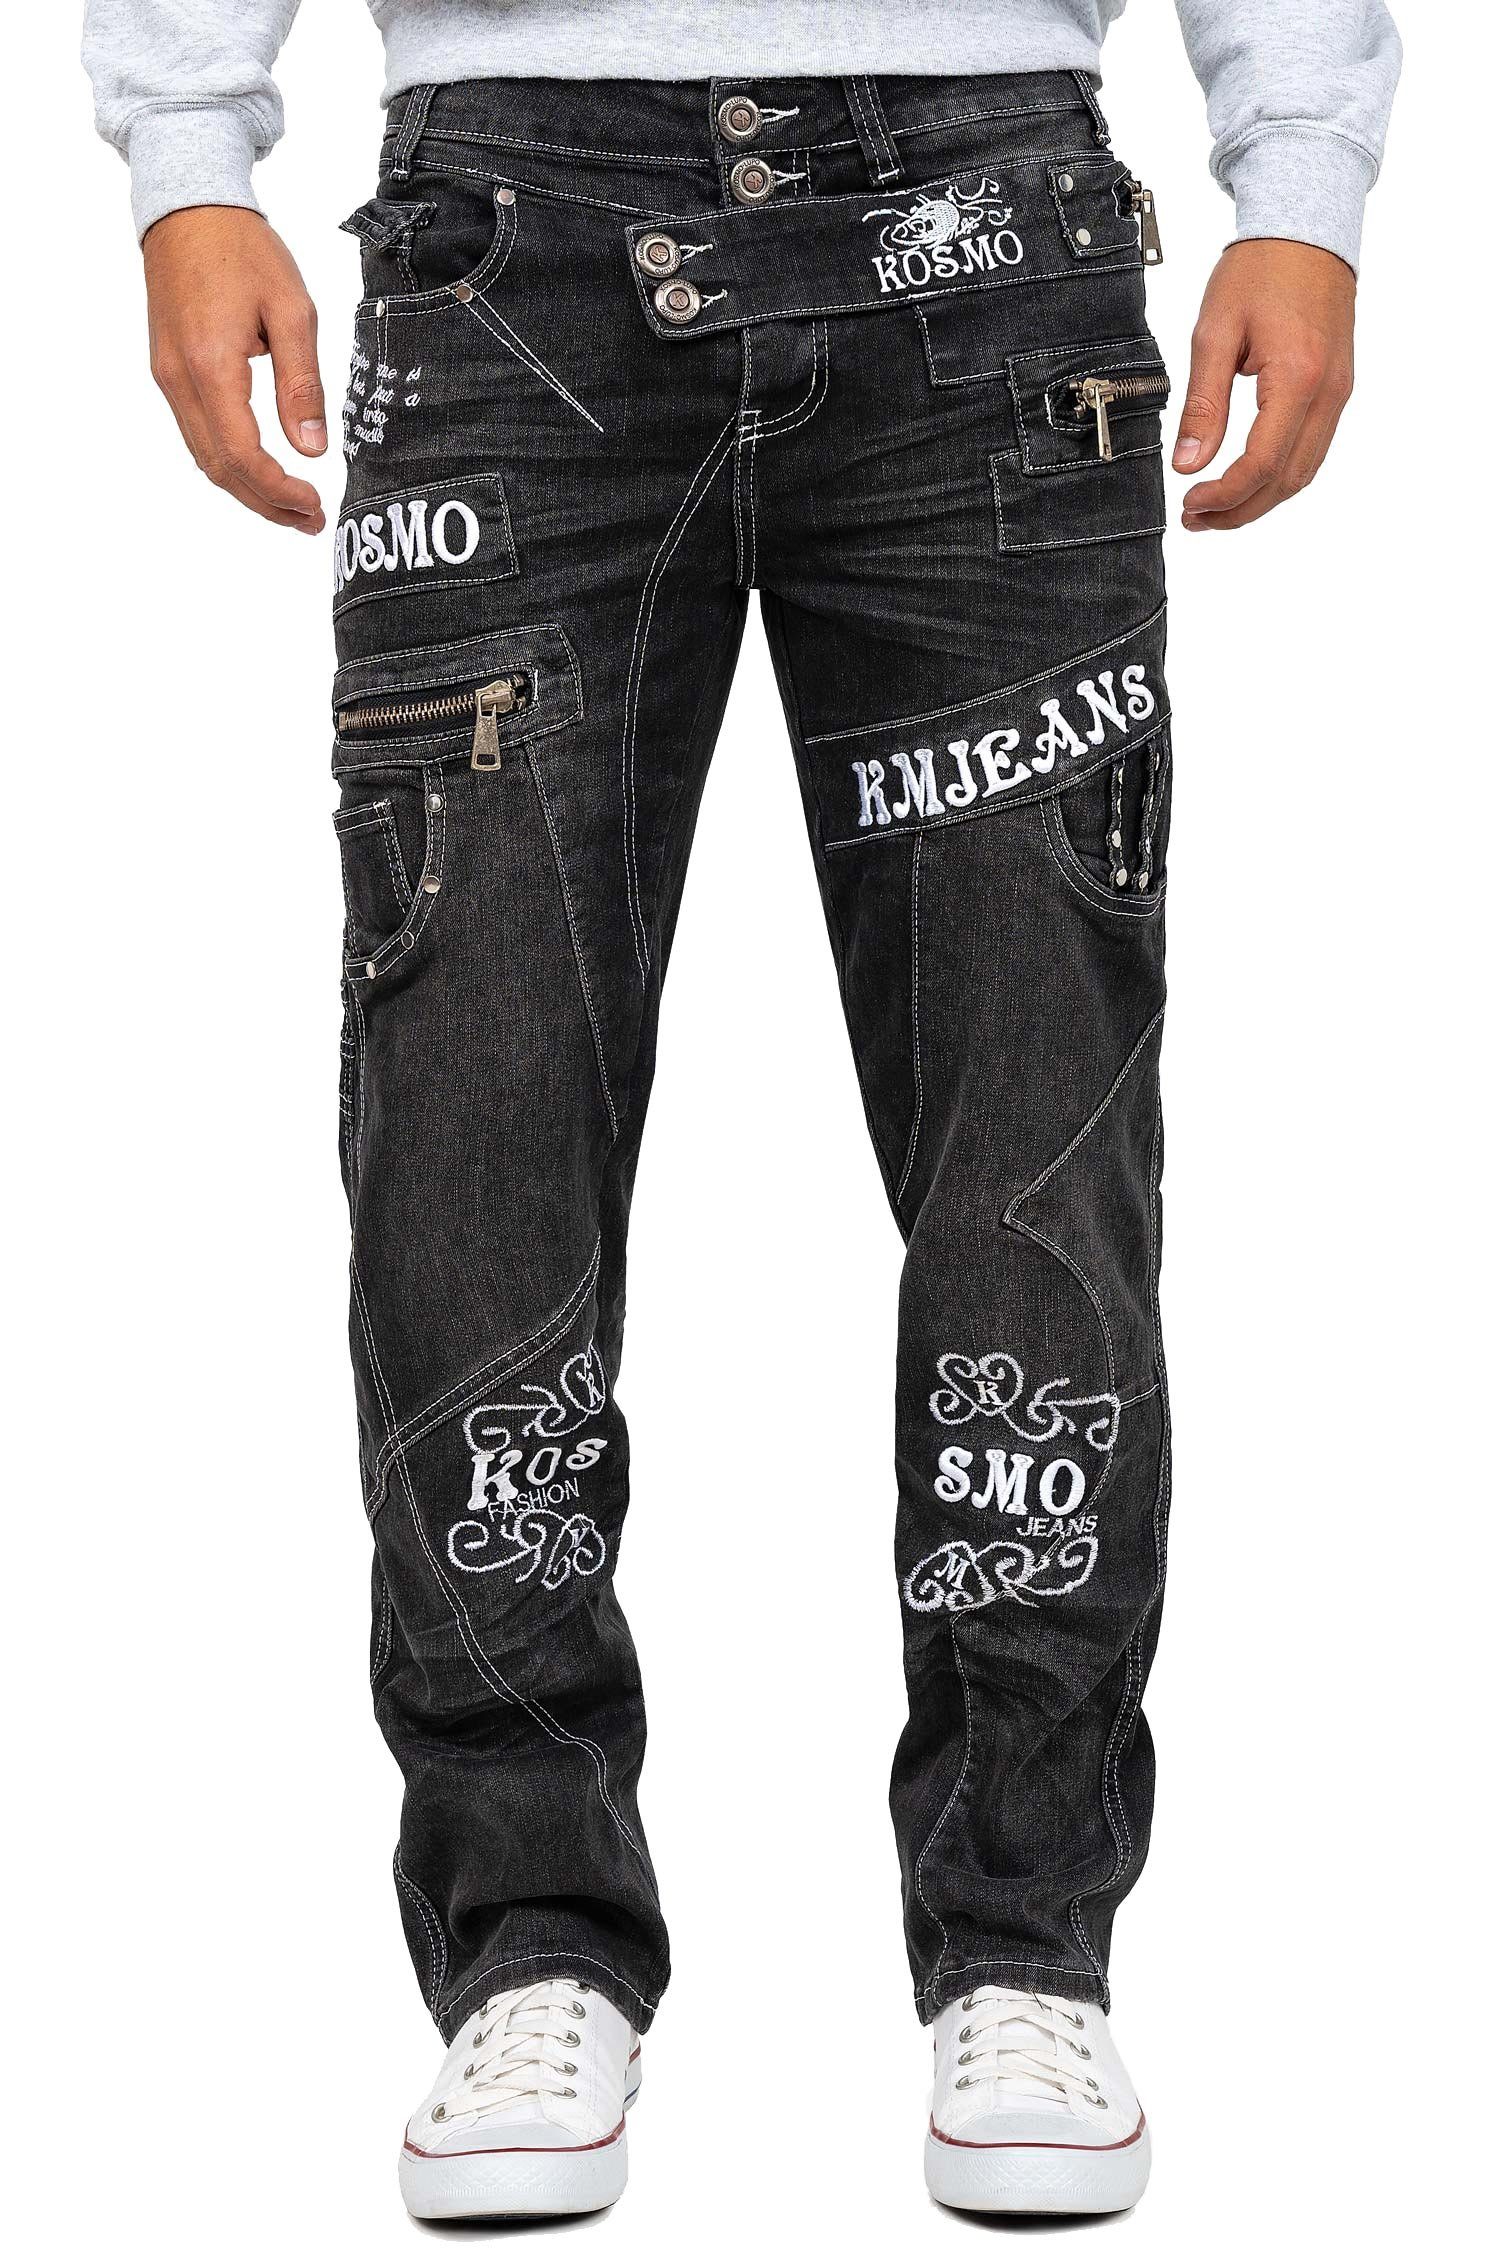 Kosmo Lupo 5-Pocket-Jeans Auffällige Herren Hose BA-KM051 Markante Waschnung und Verzierungen grau